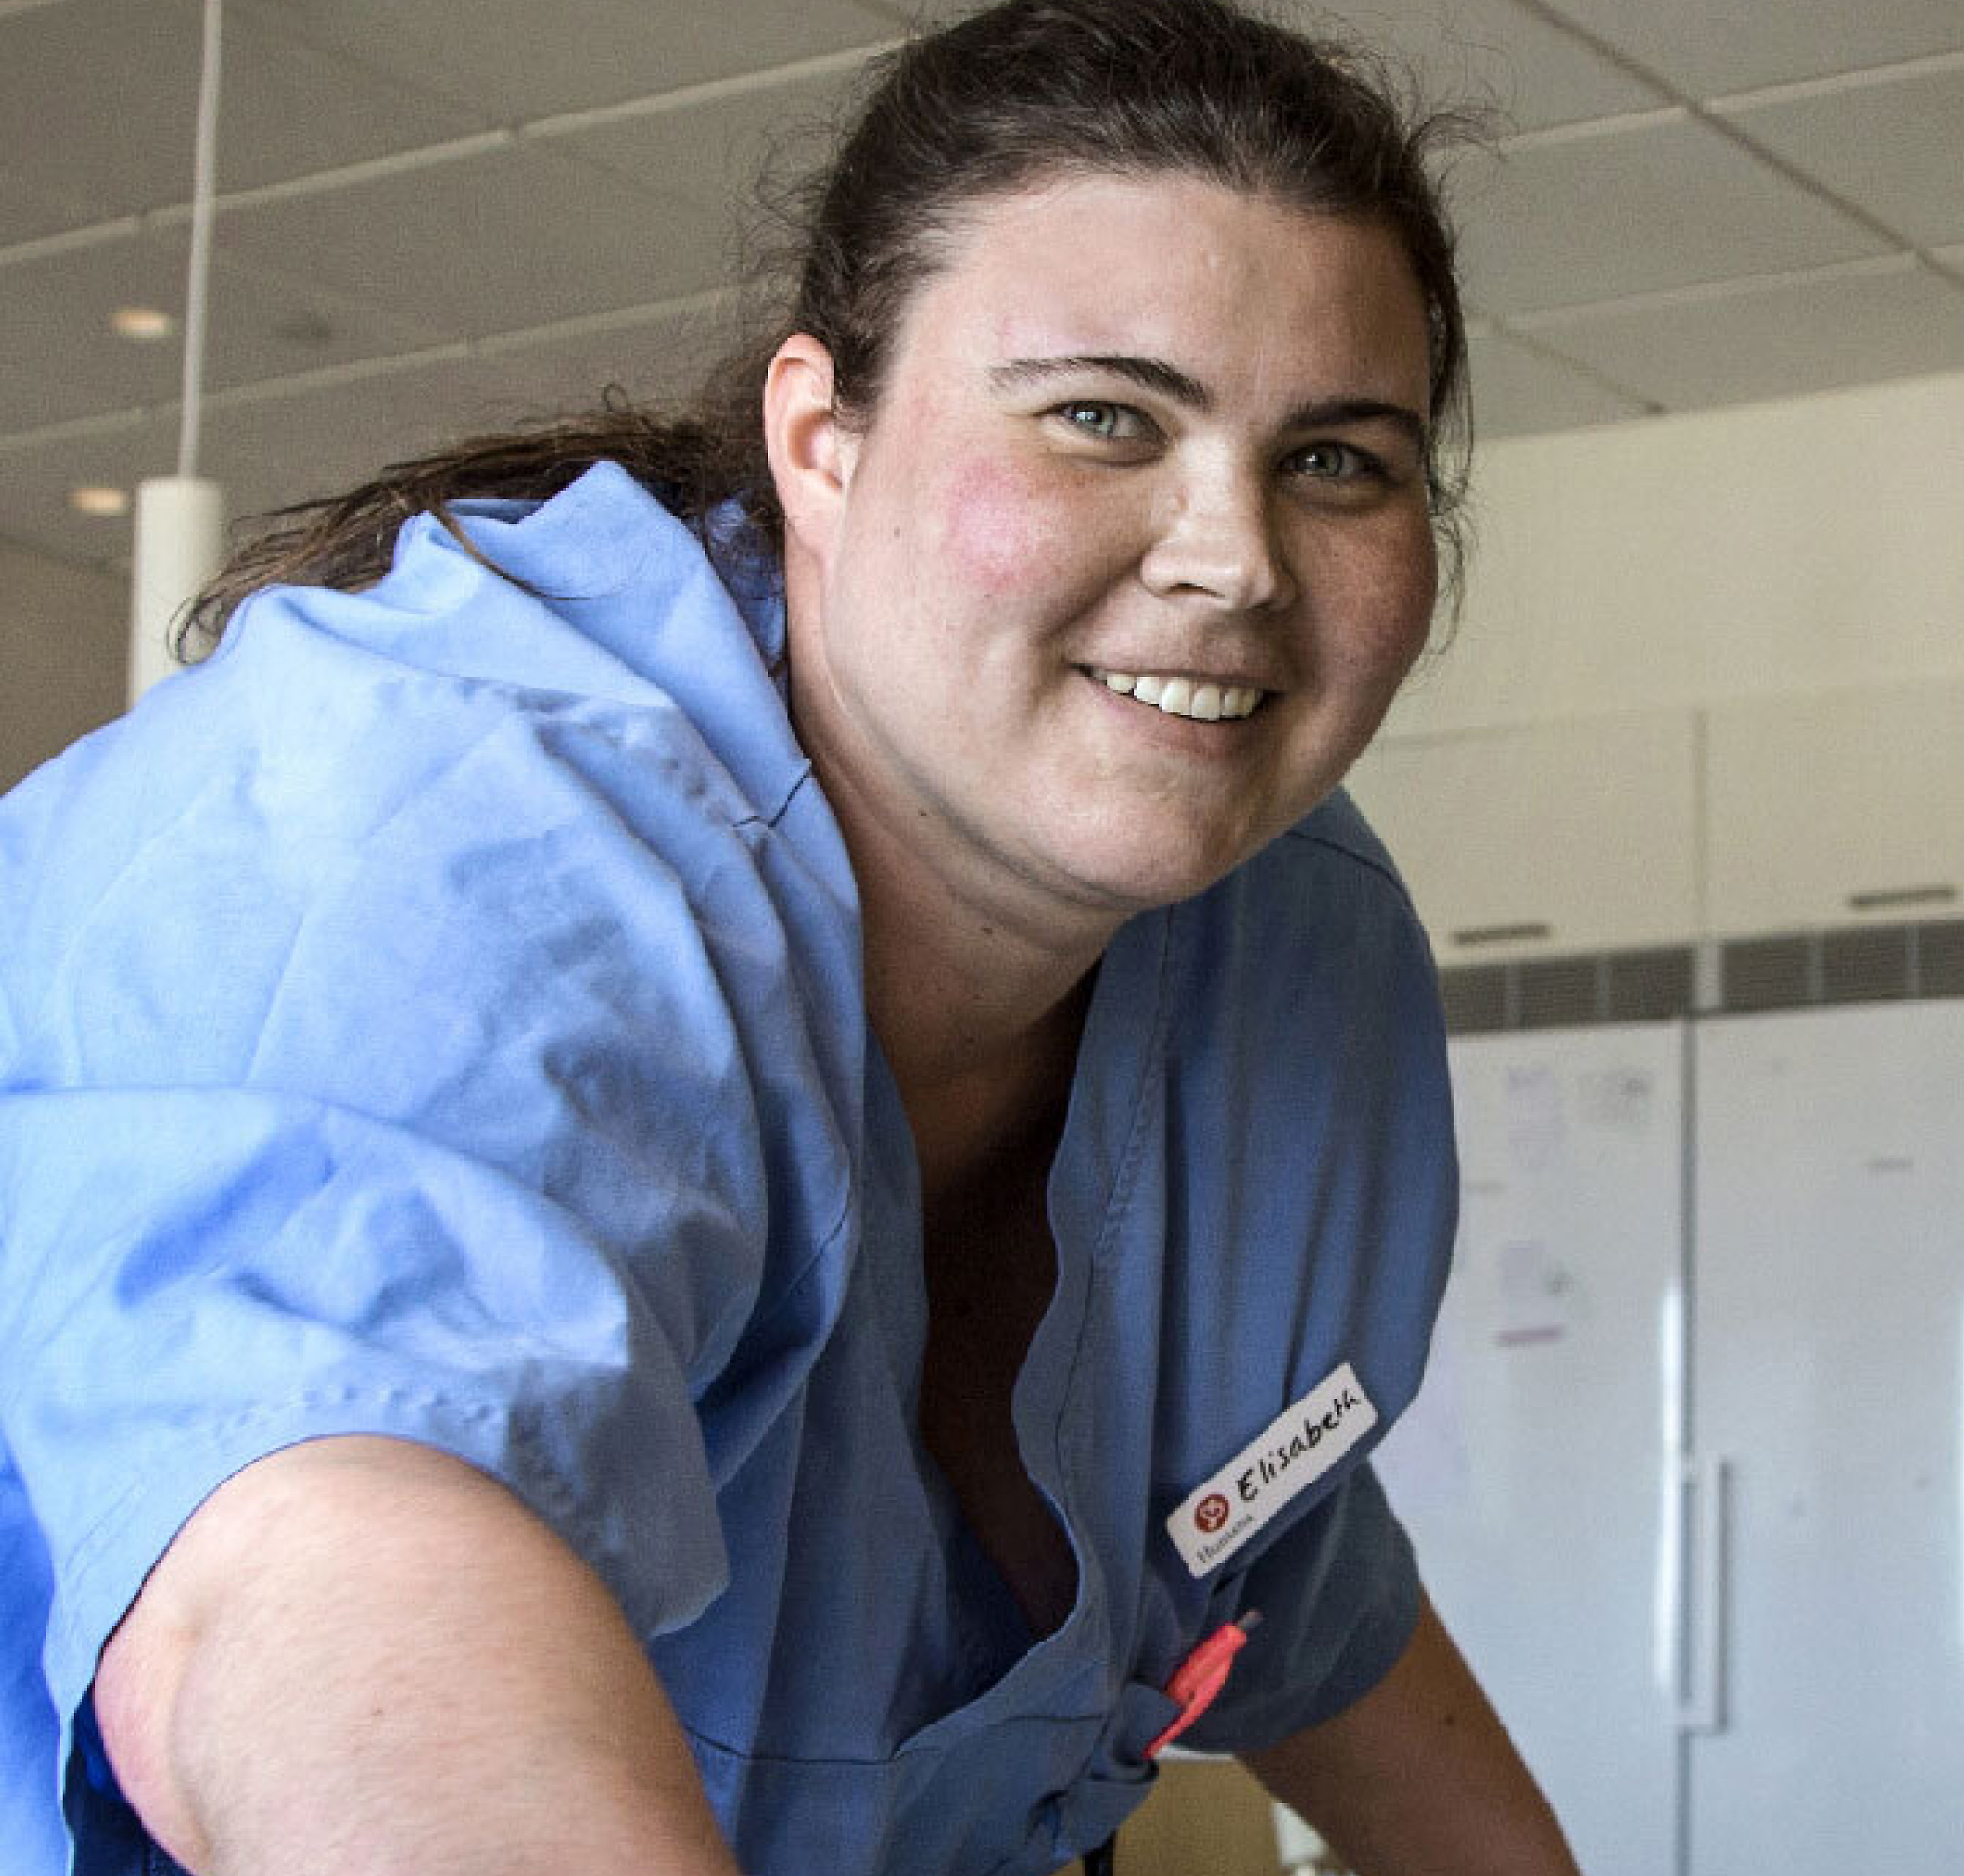 Một nữ y tá với một chiếc thẻ tên đánh dấu 'elizabeth' đang mỉm cười trong bộ đồng phục màu lam, trong không gian bệnh viện sáng và rộng.